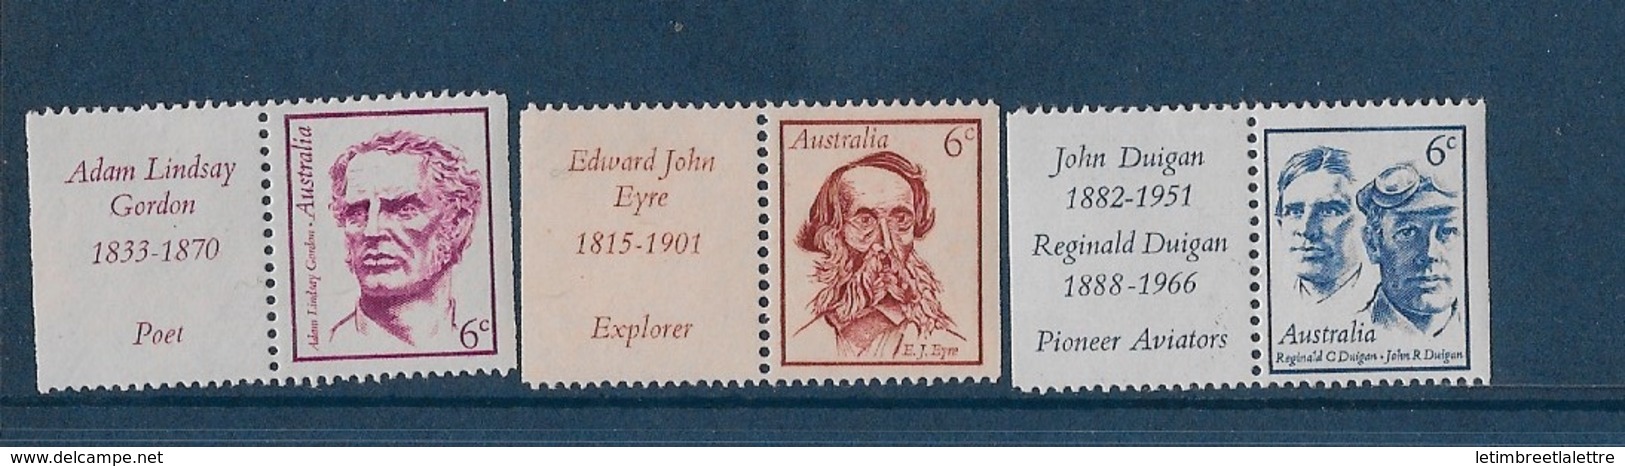 AUSTRALIE N° 427 à 429** - Mint Stamps